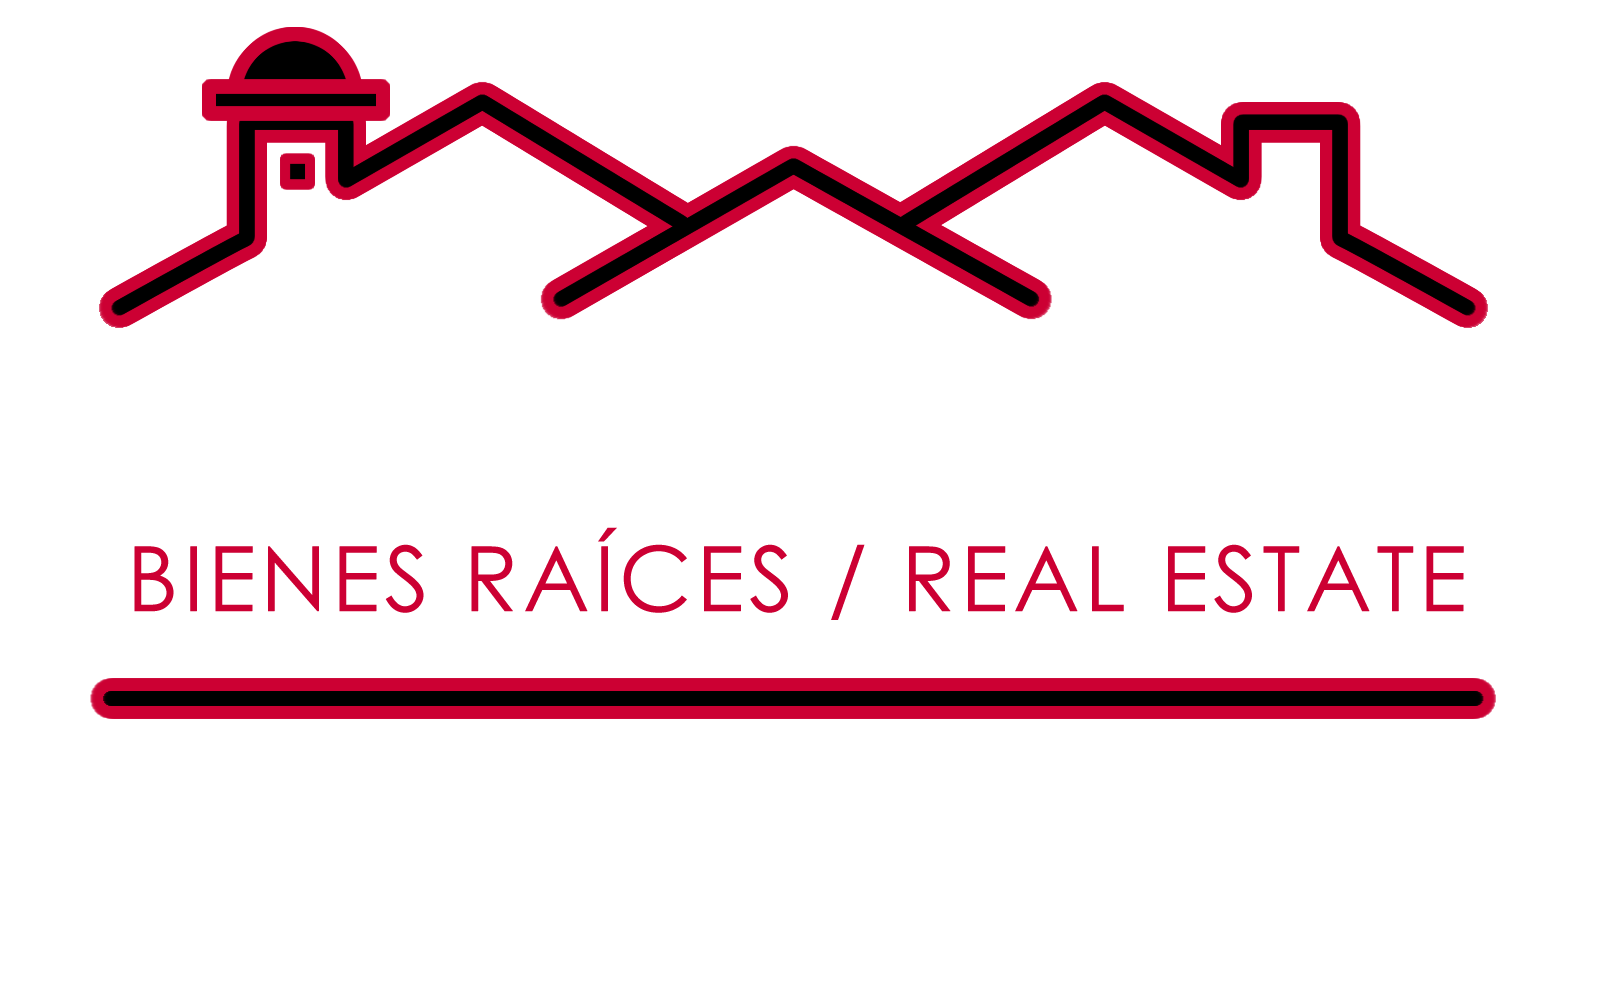 Nova antigua-los mejores en La Antigua Guatemala, con más de 25 años de experiencia